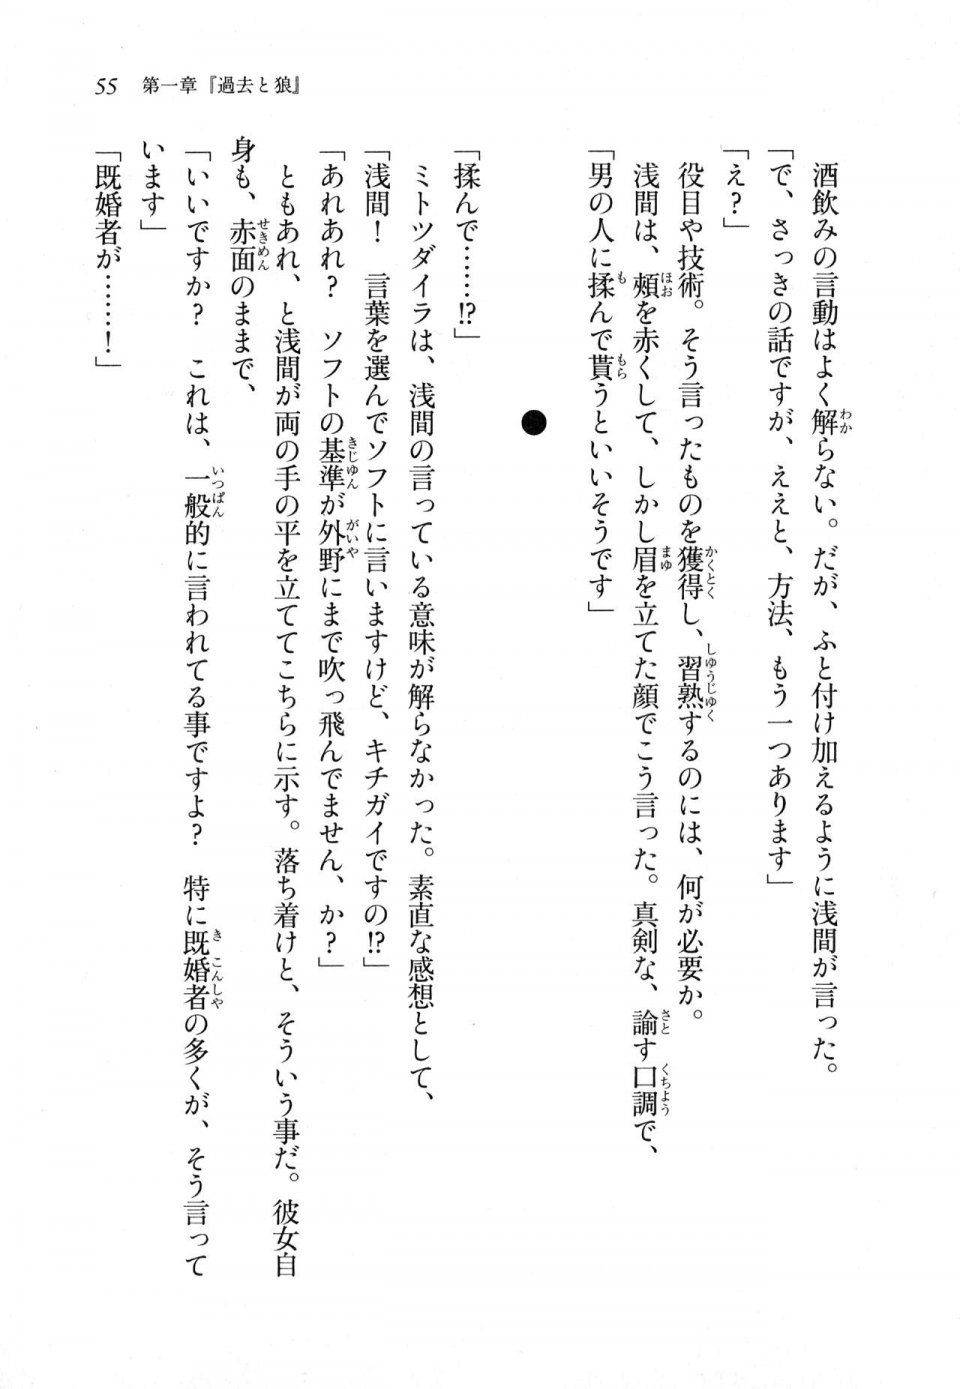 Kyoukai Senjou no Horizon LN Sidestory Vol 1 - Photo #53